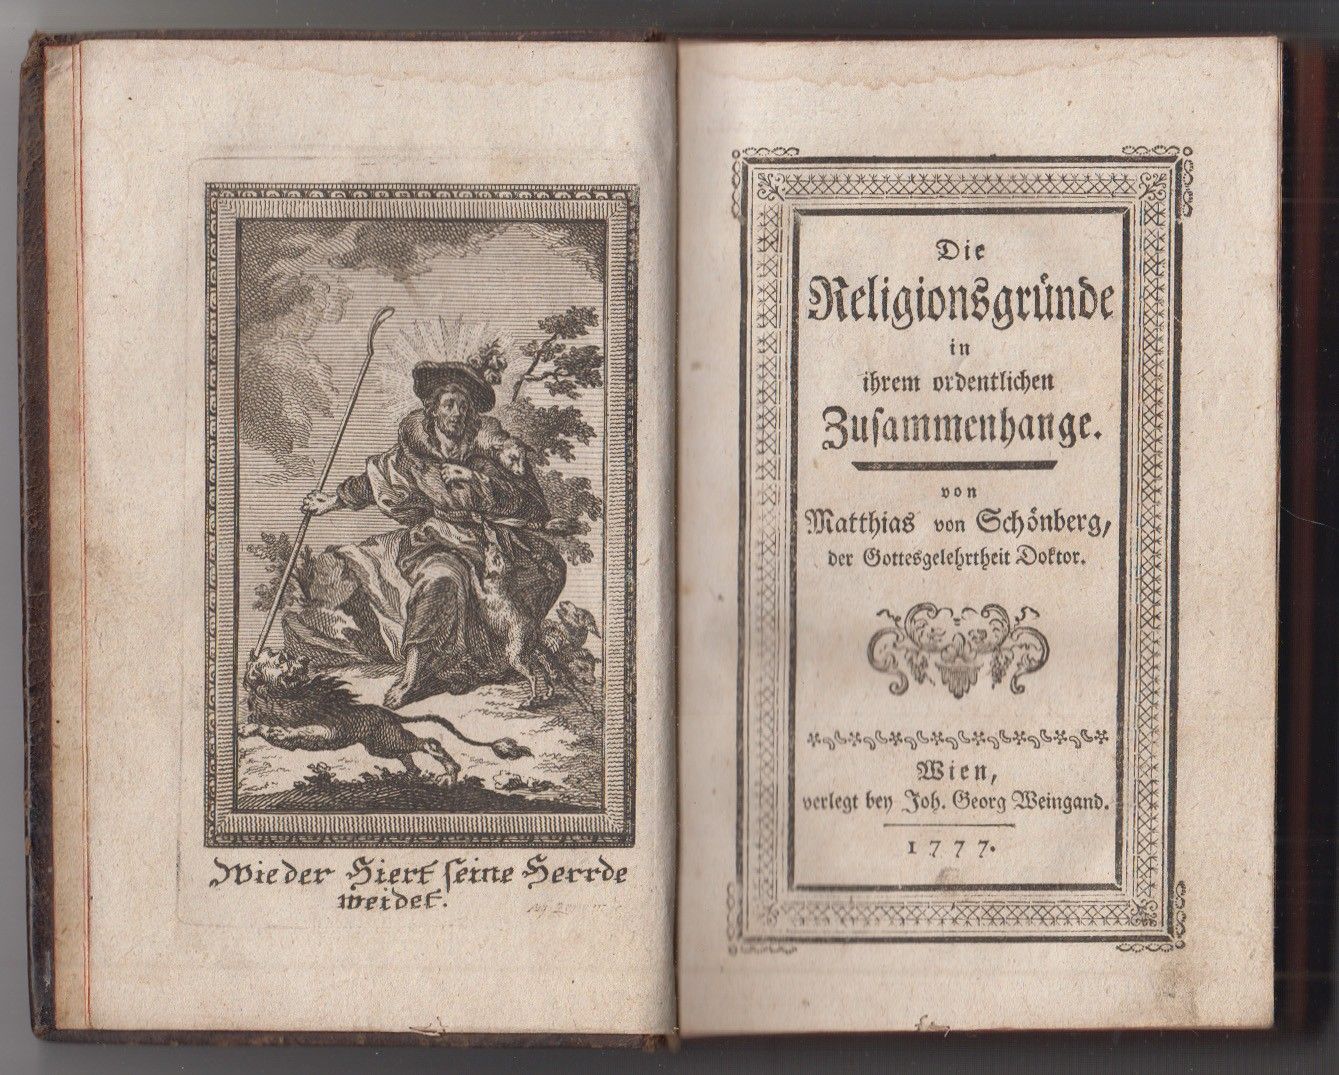 SCHNBERG, Matthias v. Die Religionsgrnde in ihrem ordentlichen Zusammenhange.